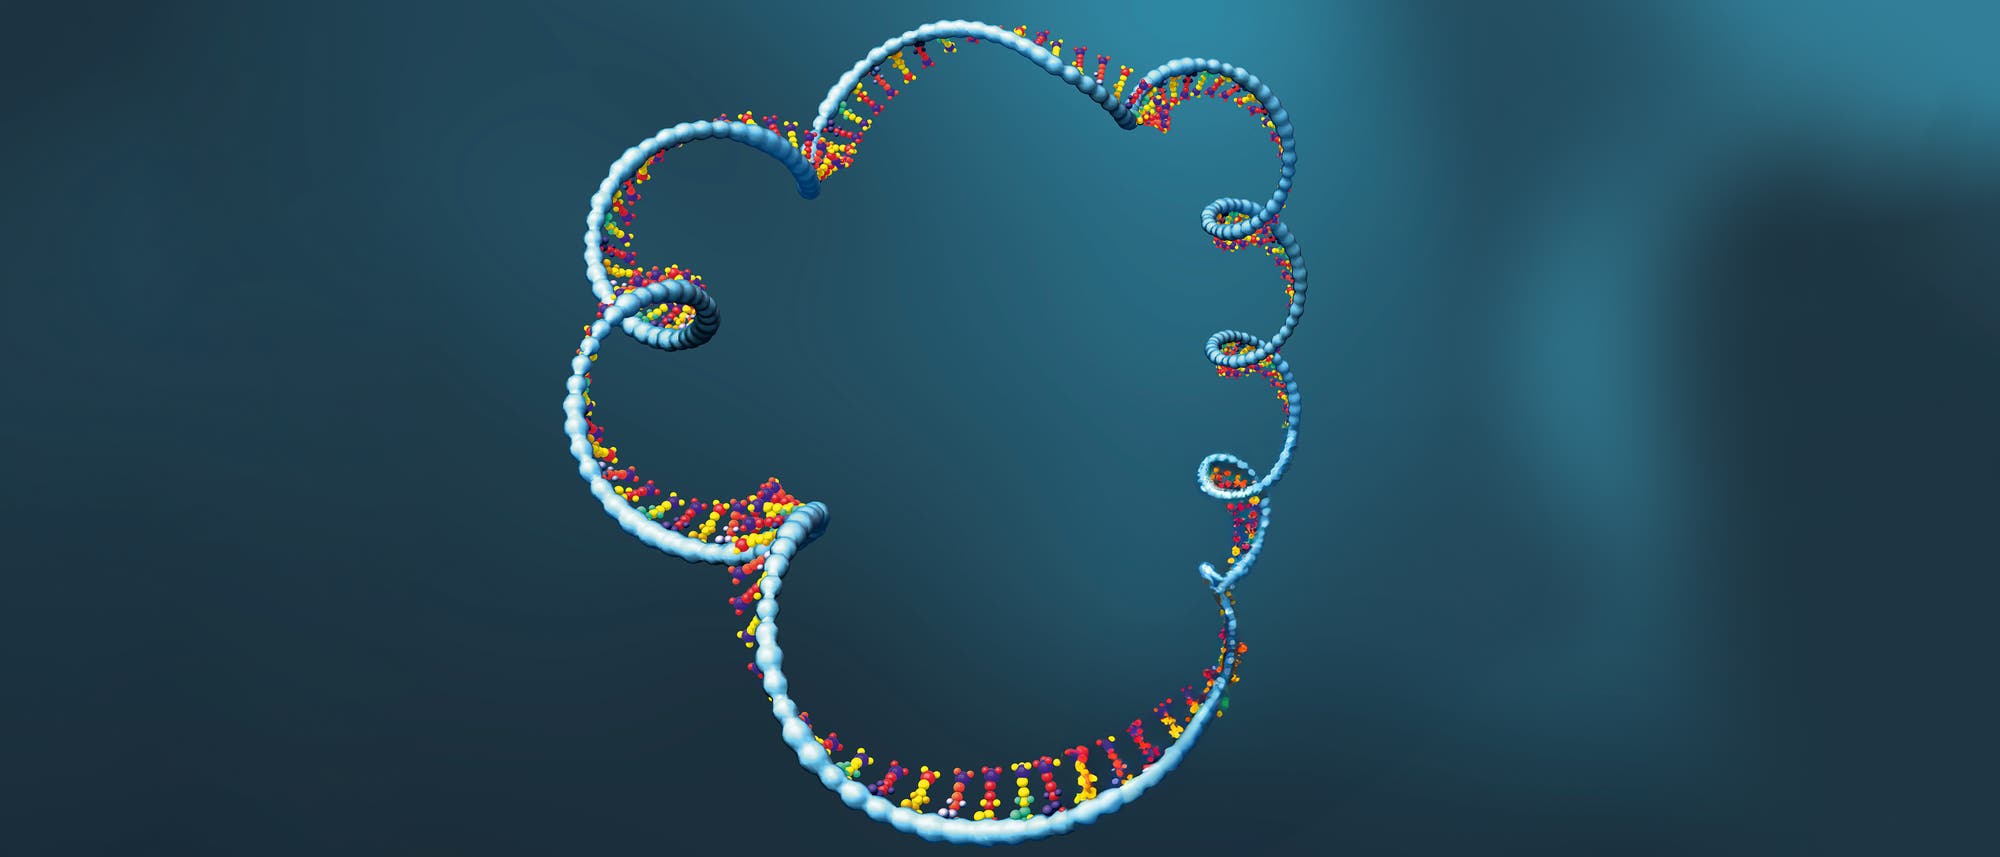 Illustration einer einer ringförmigen messenger RNA (mRNA)